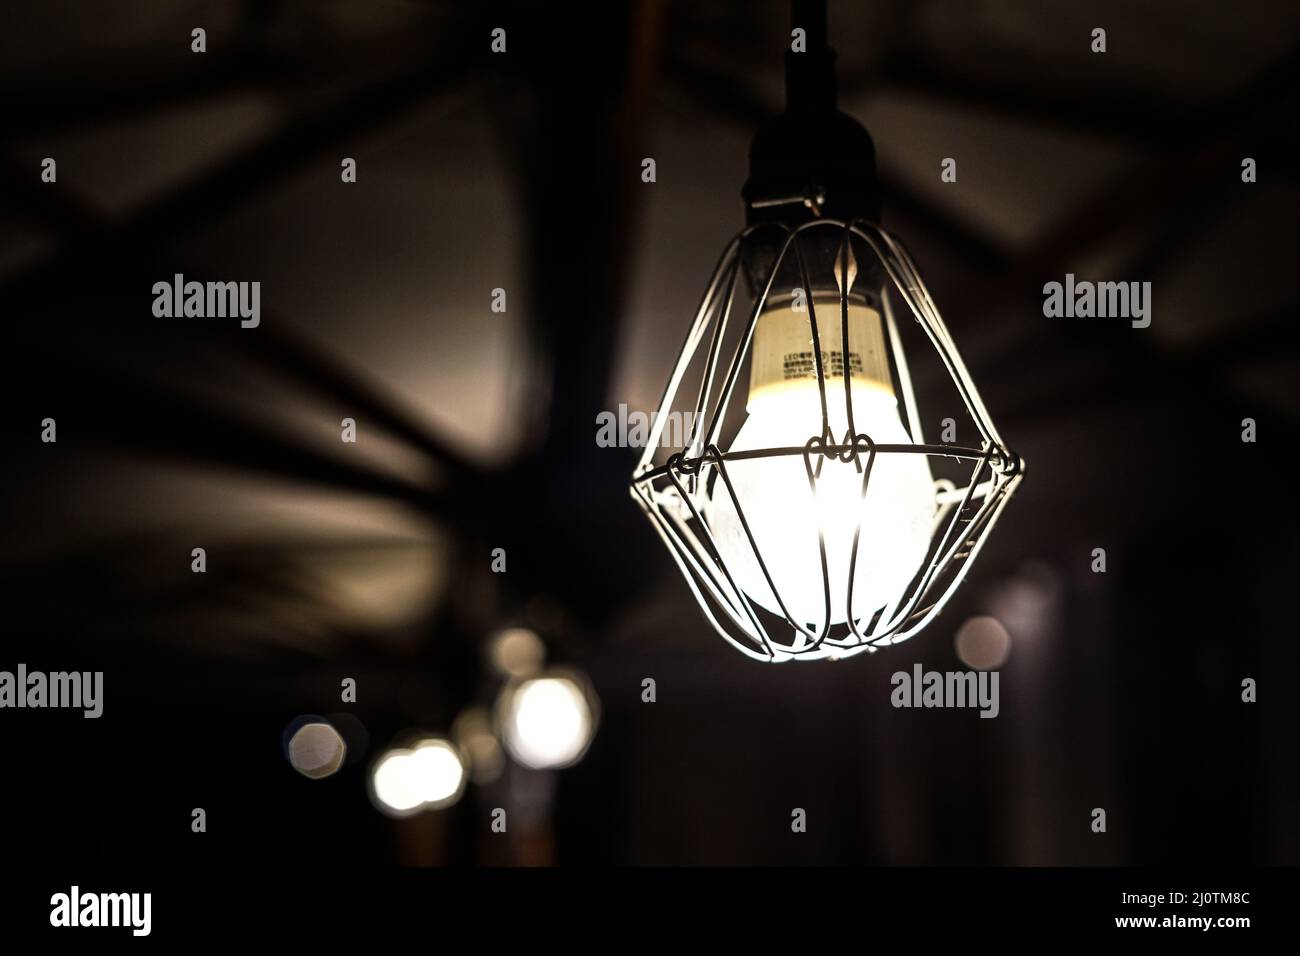 Image of stylish lighting fixtures Stock Photo